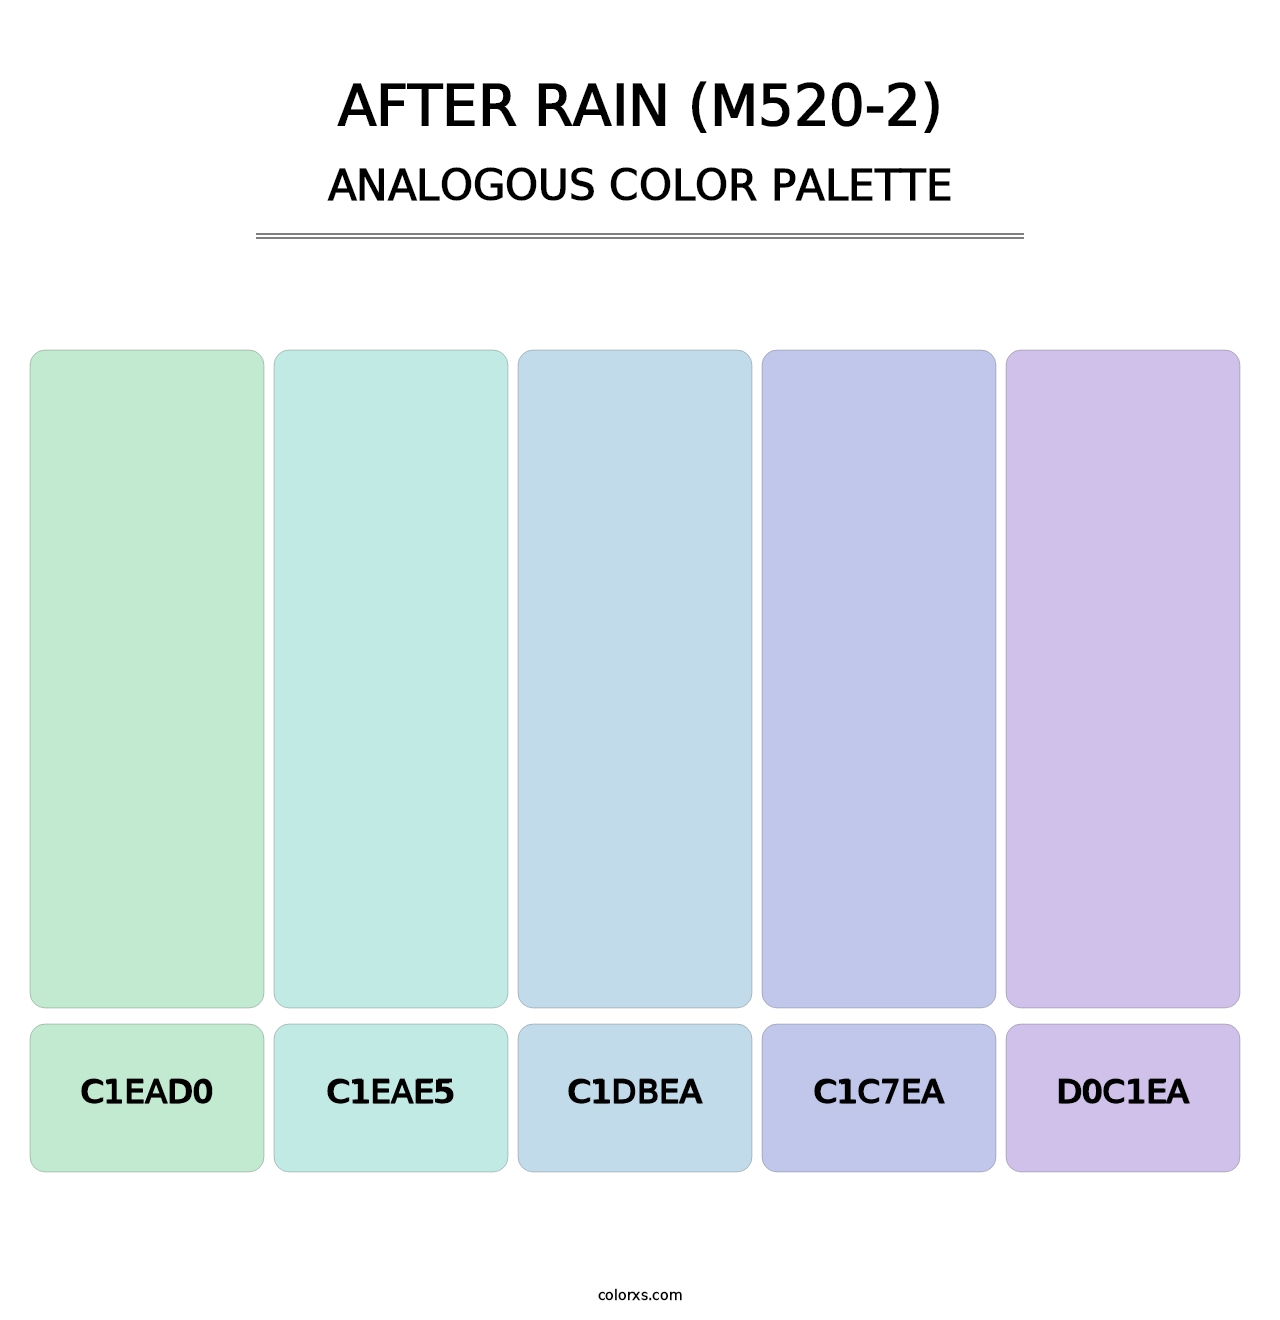 After Rain (M520-2) - Analogous Color Palette